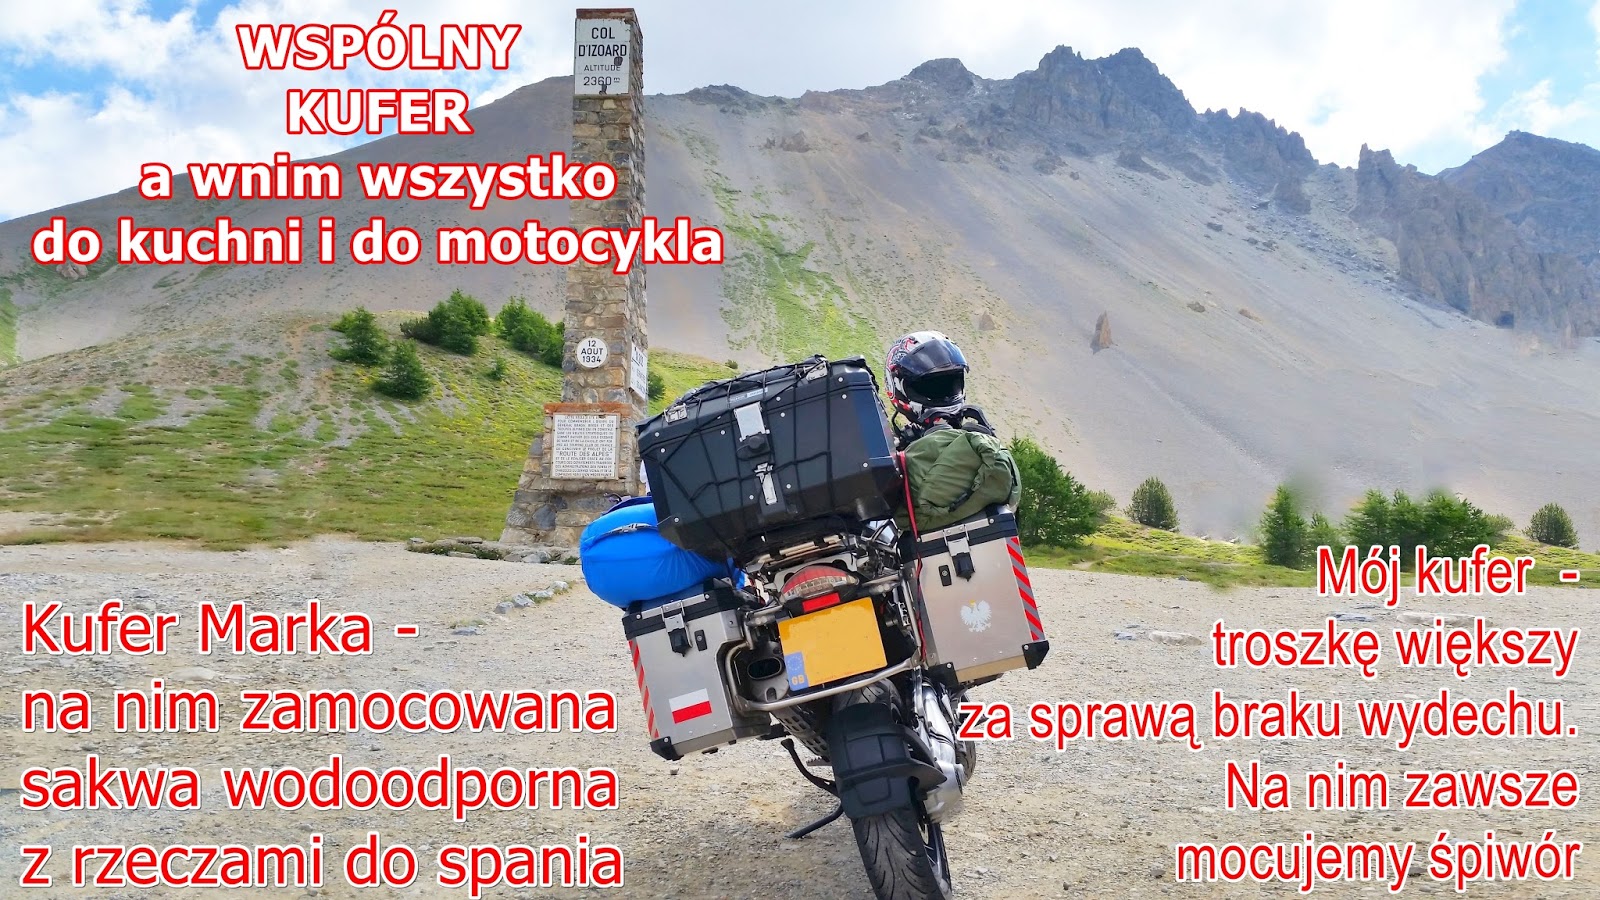 Polish Bikers